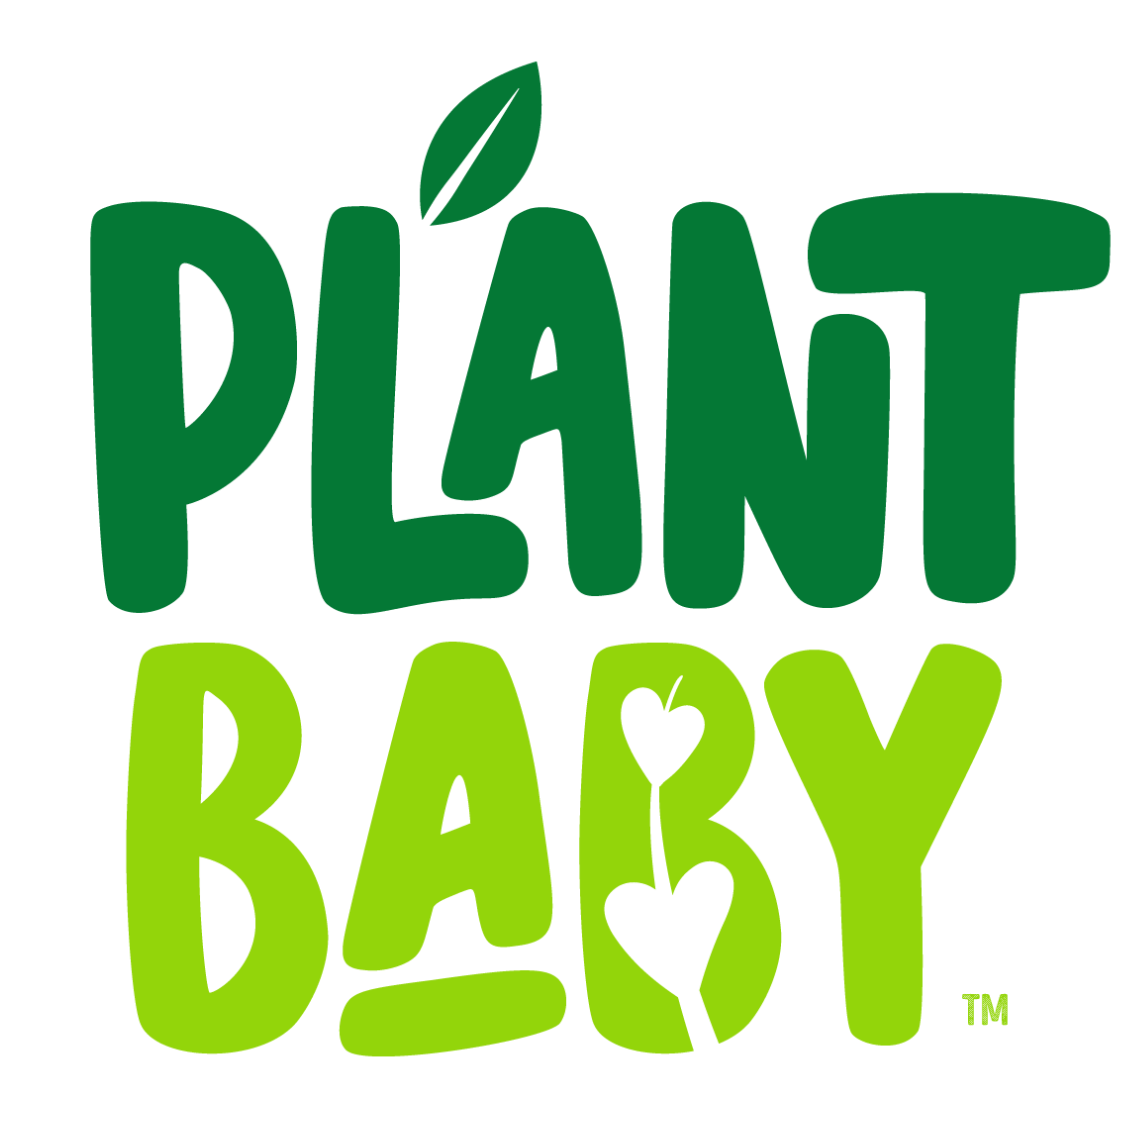 Plant Baby